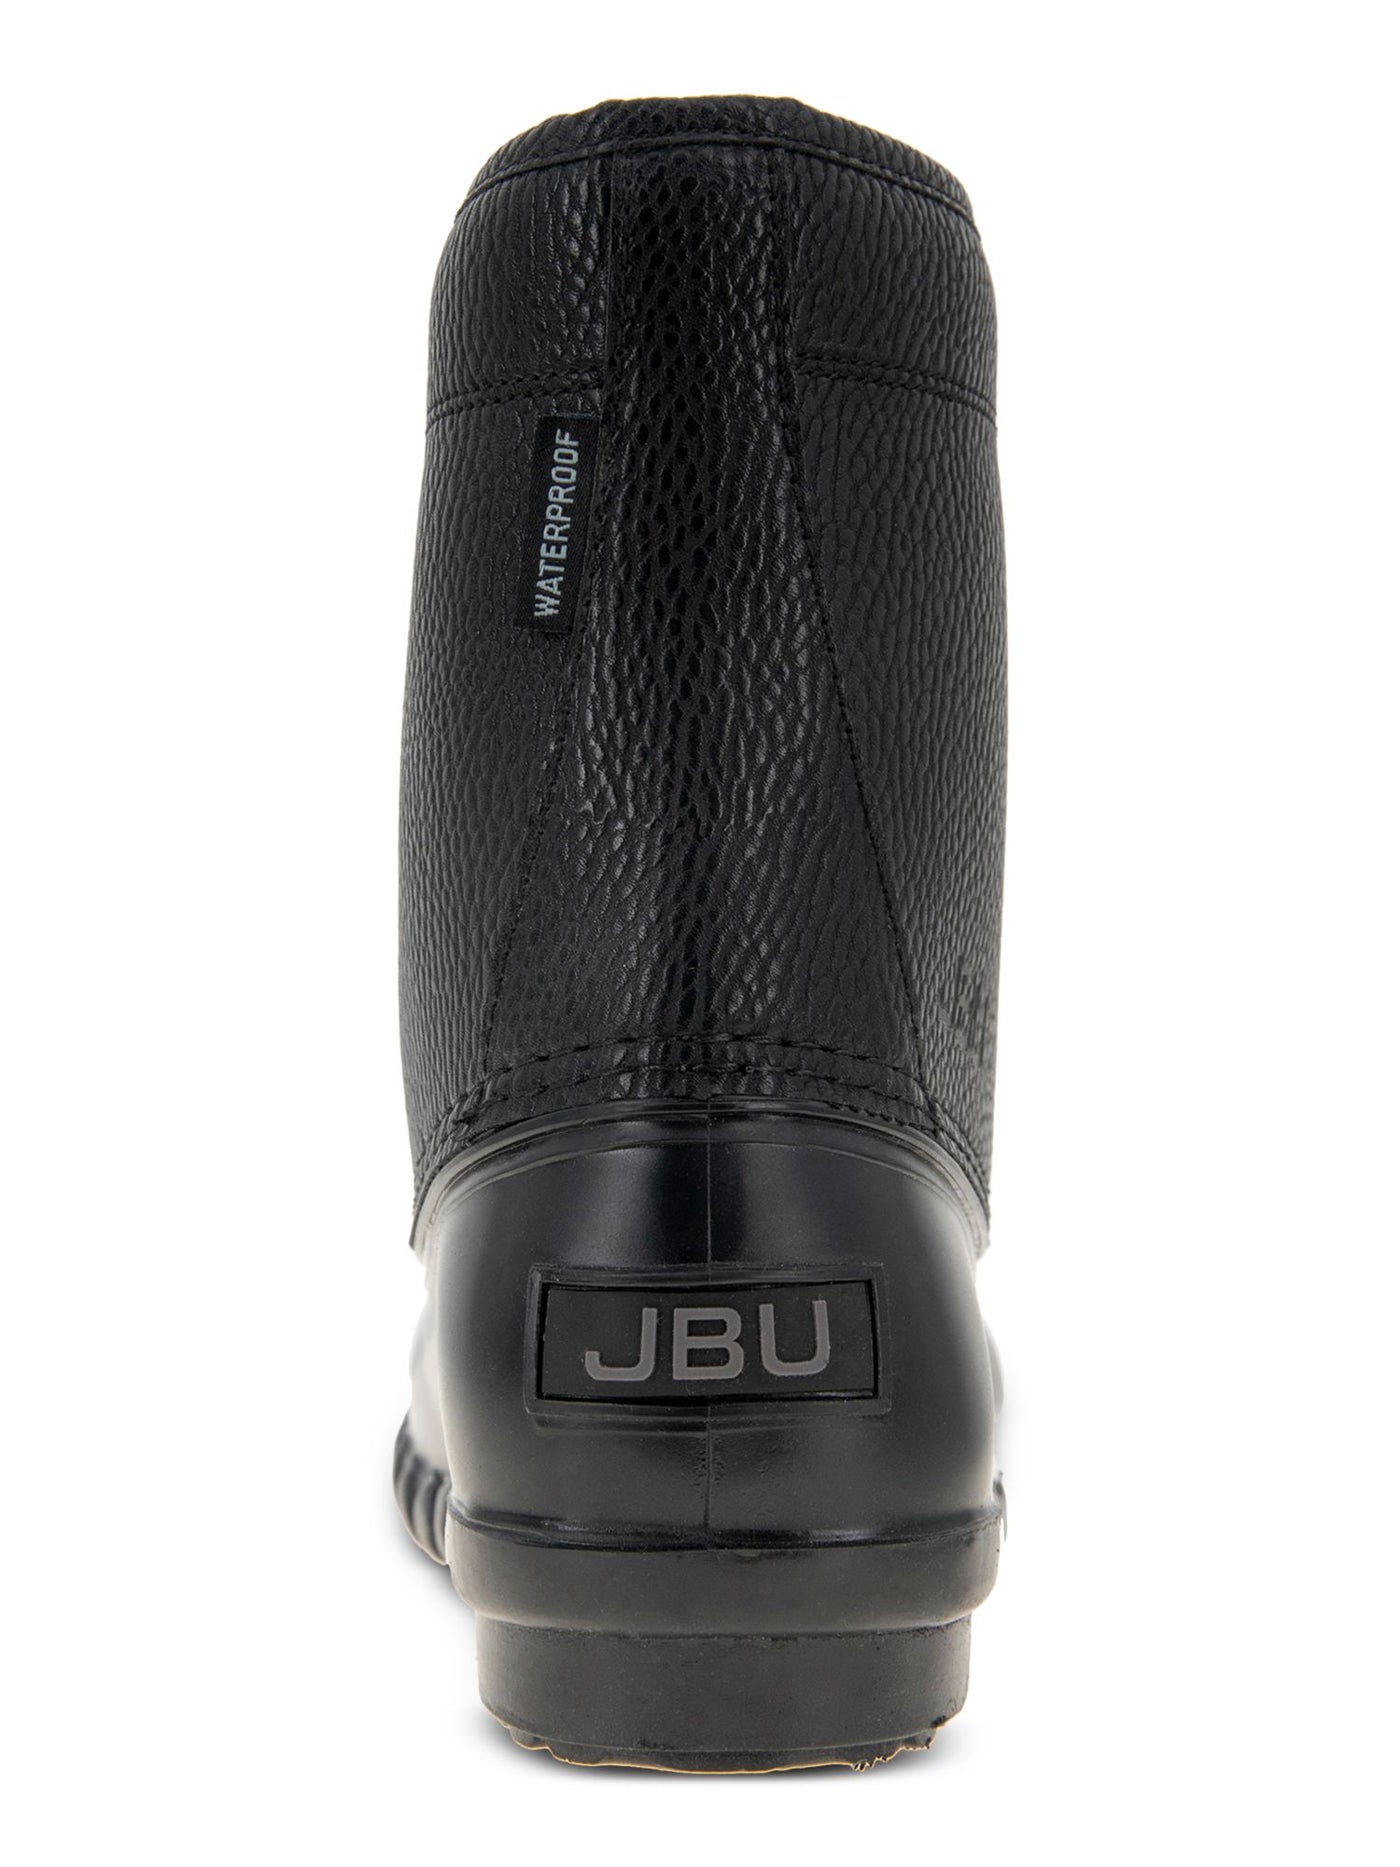 JBU BY JAMBU Mens Black Waterproof Padded Maine Round Toe Lace-Up Duck Boots 13 M